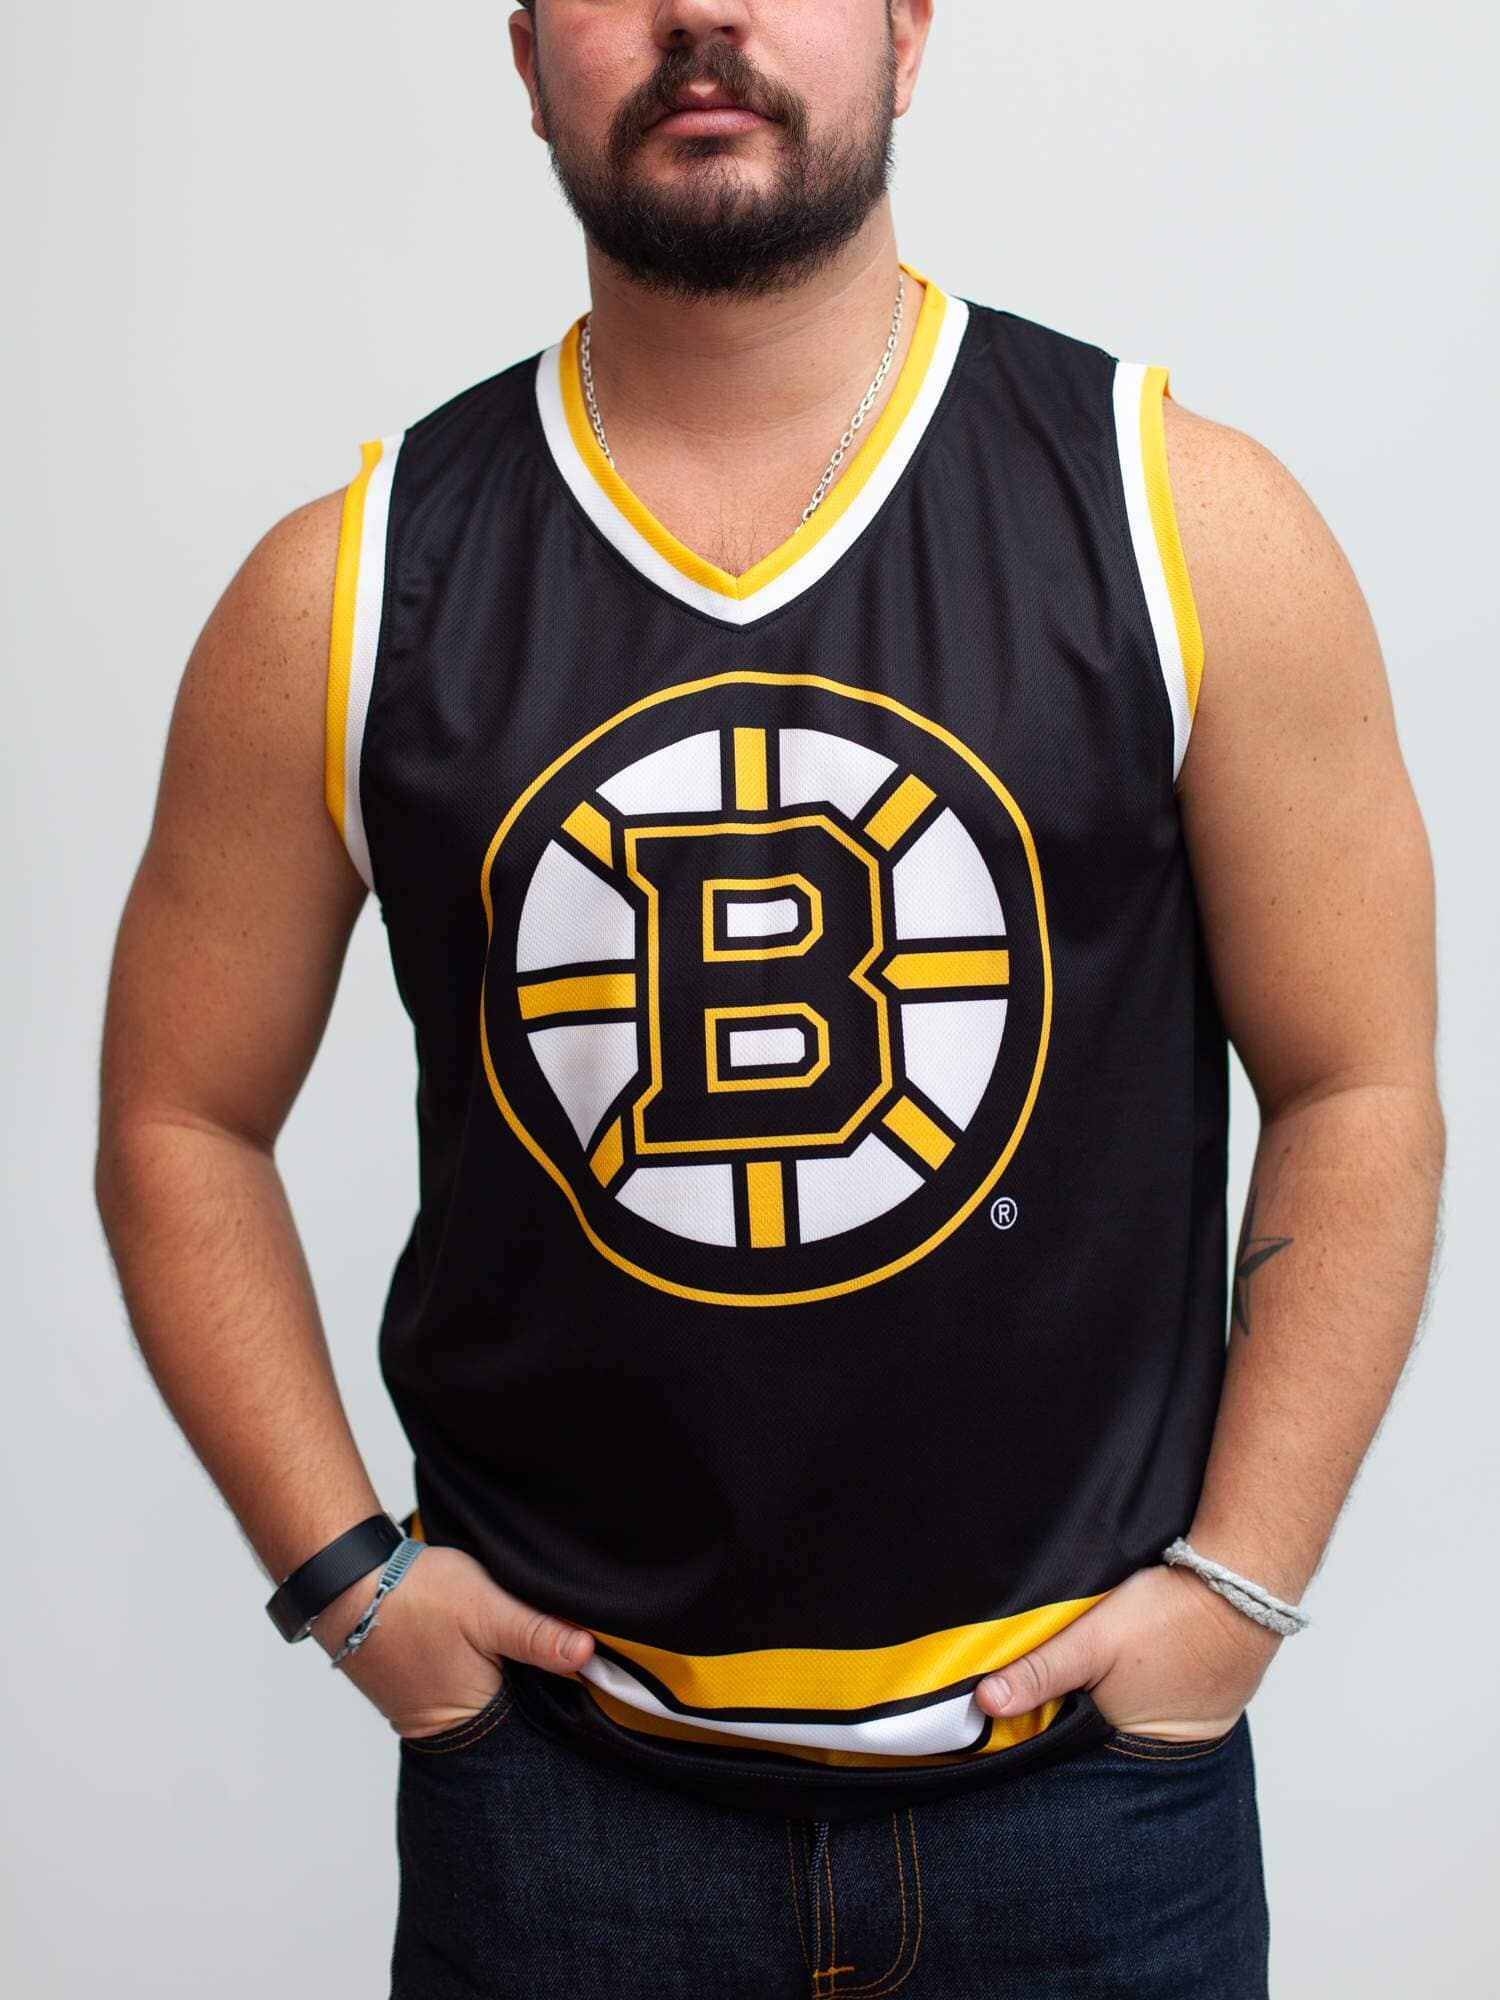 New Bruins jersey idea. : r/BostonBruins